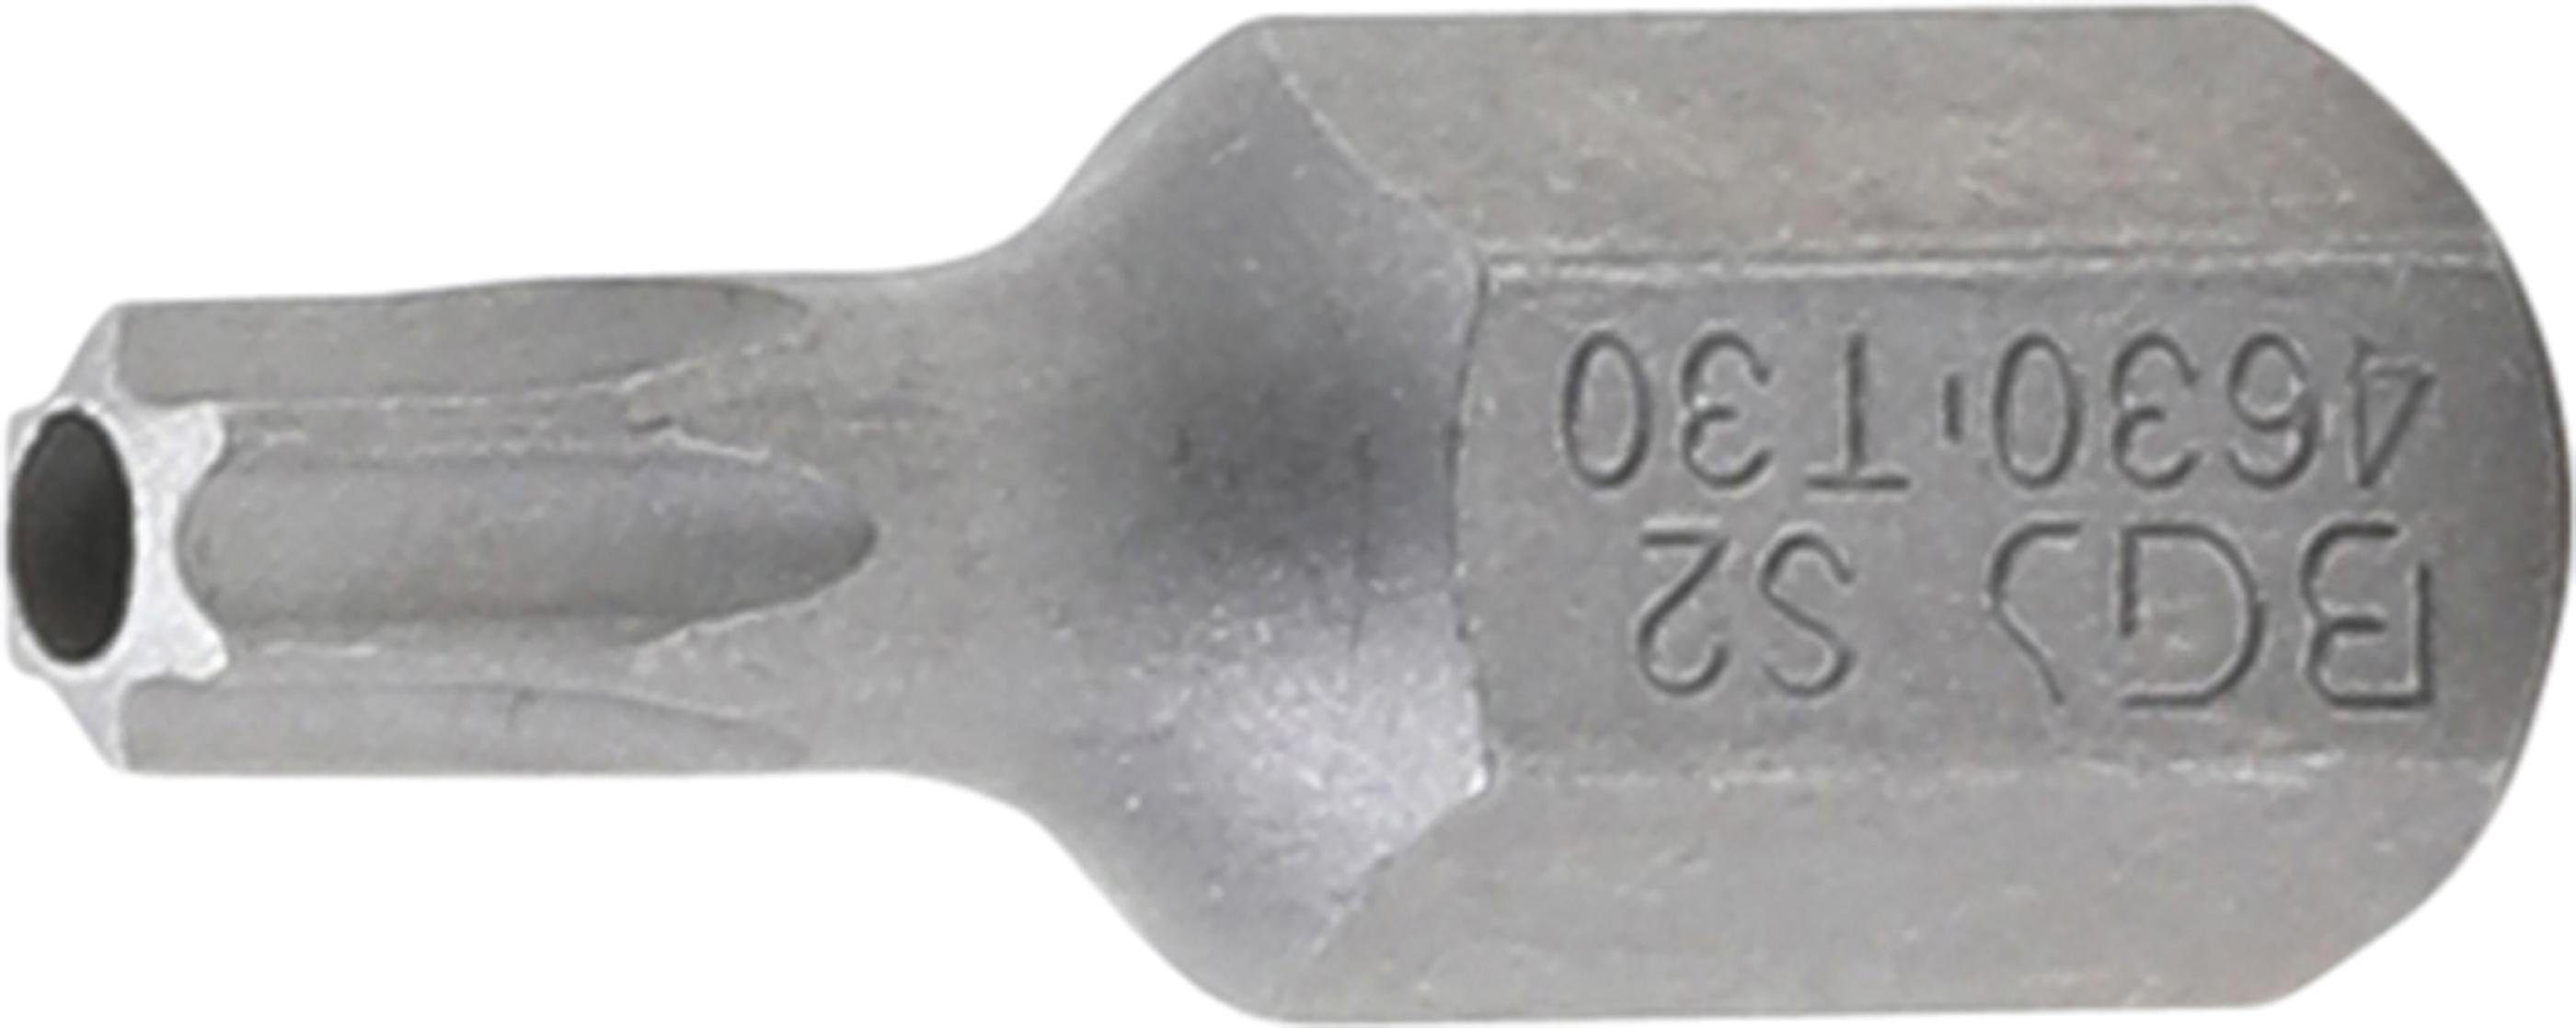 BGS technic Bit-Schraubendreher Bit, Antrieb Außensechskant 10 mm (3/8), T-Profil (für Torx) mit Bohrung T30